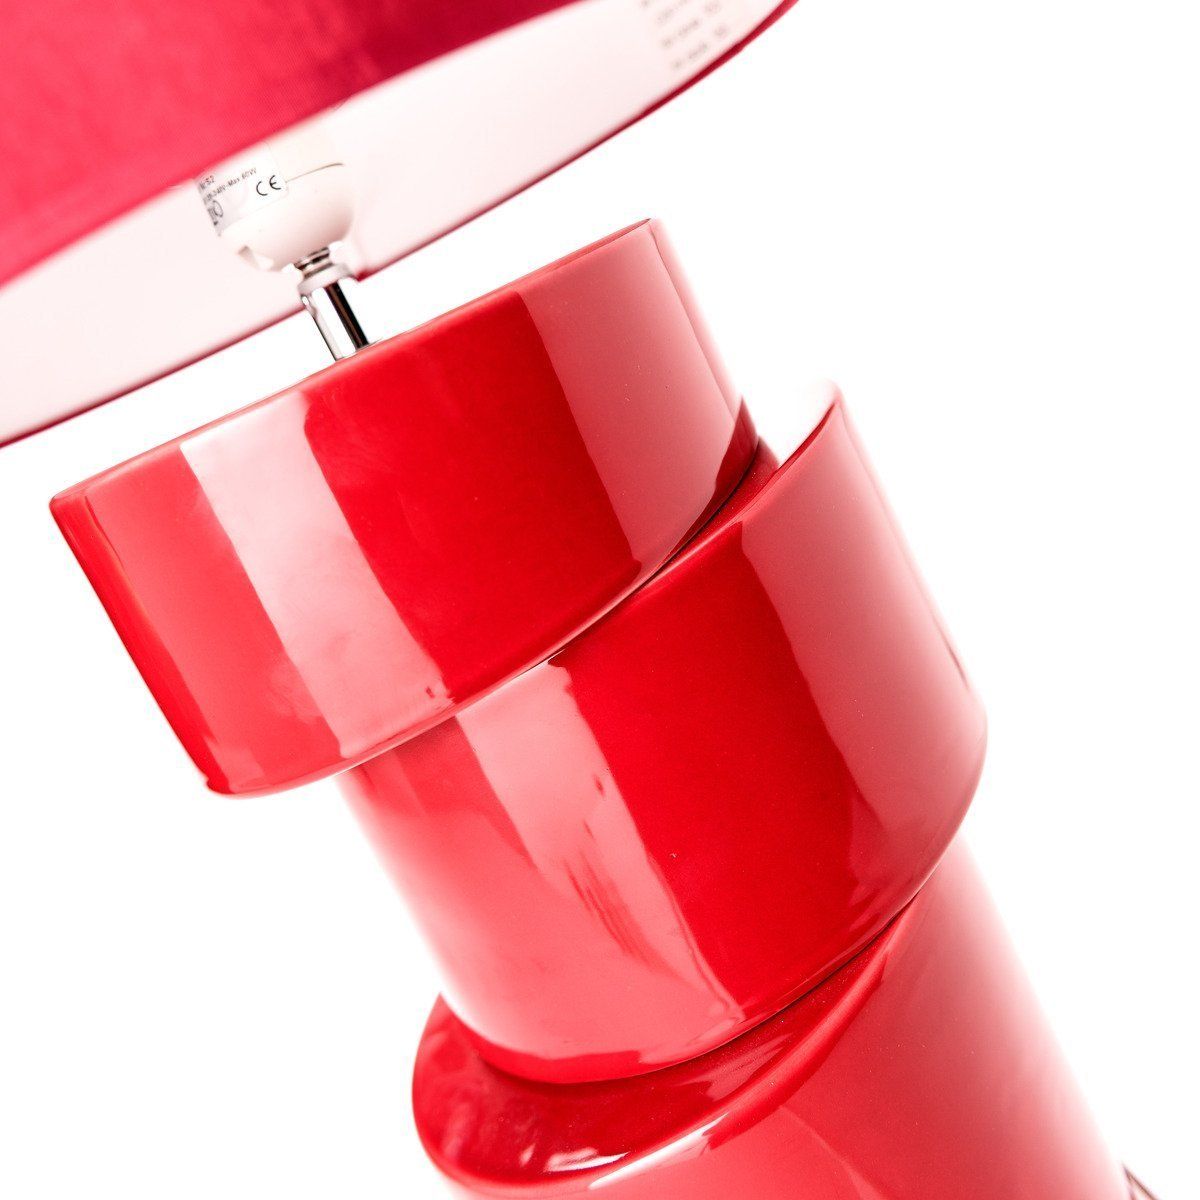 Lampe de salon SMART rouge en céramique et tissu